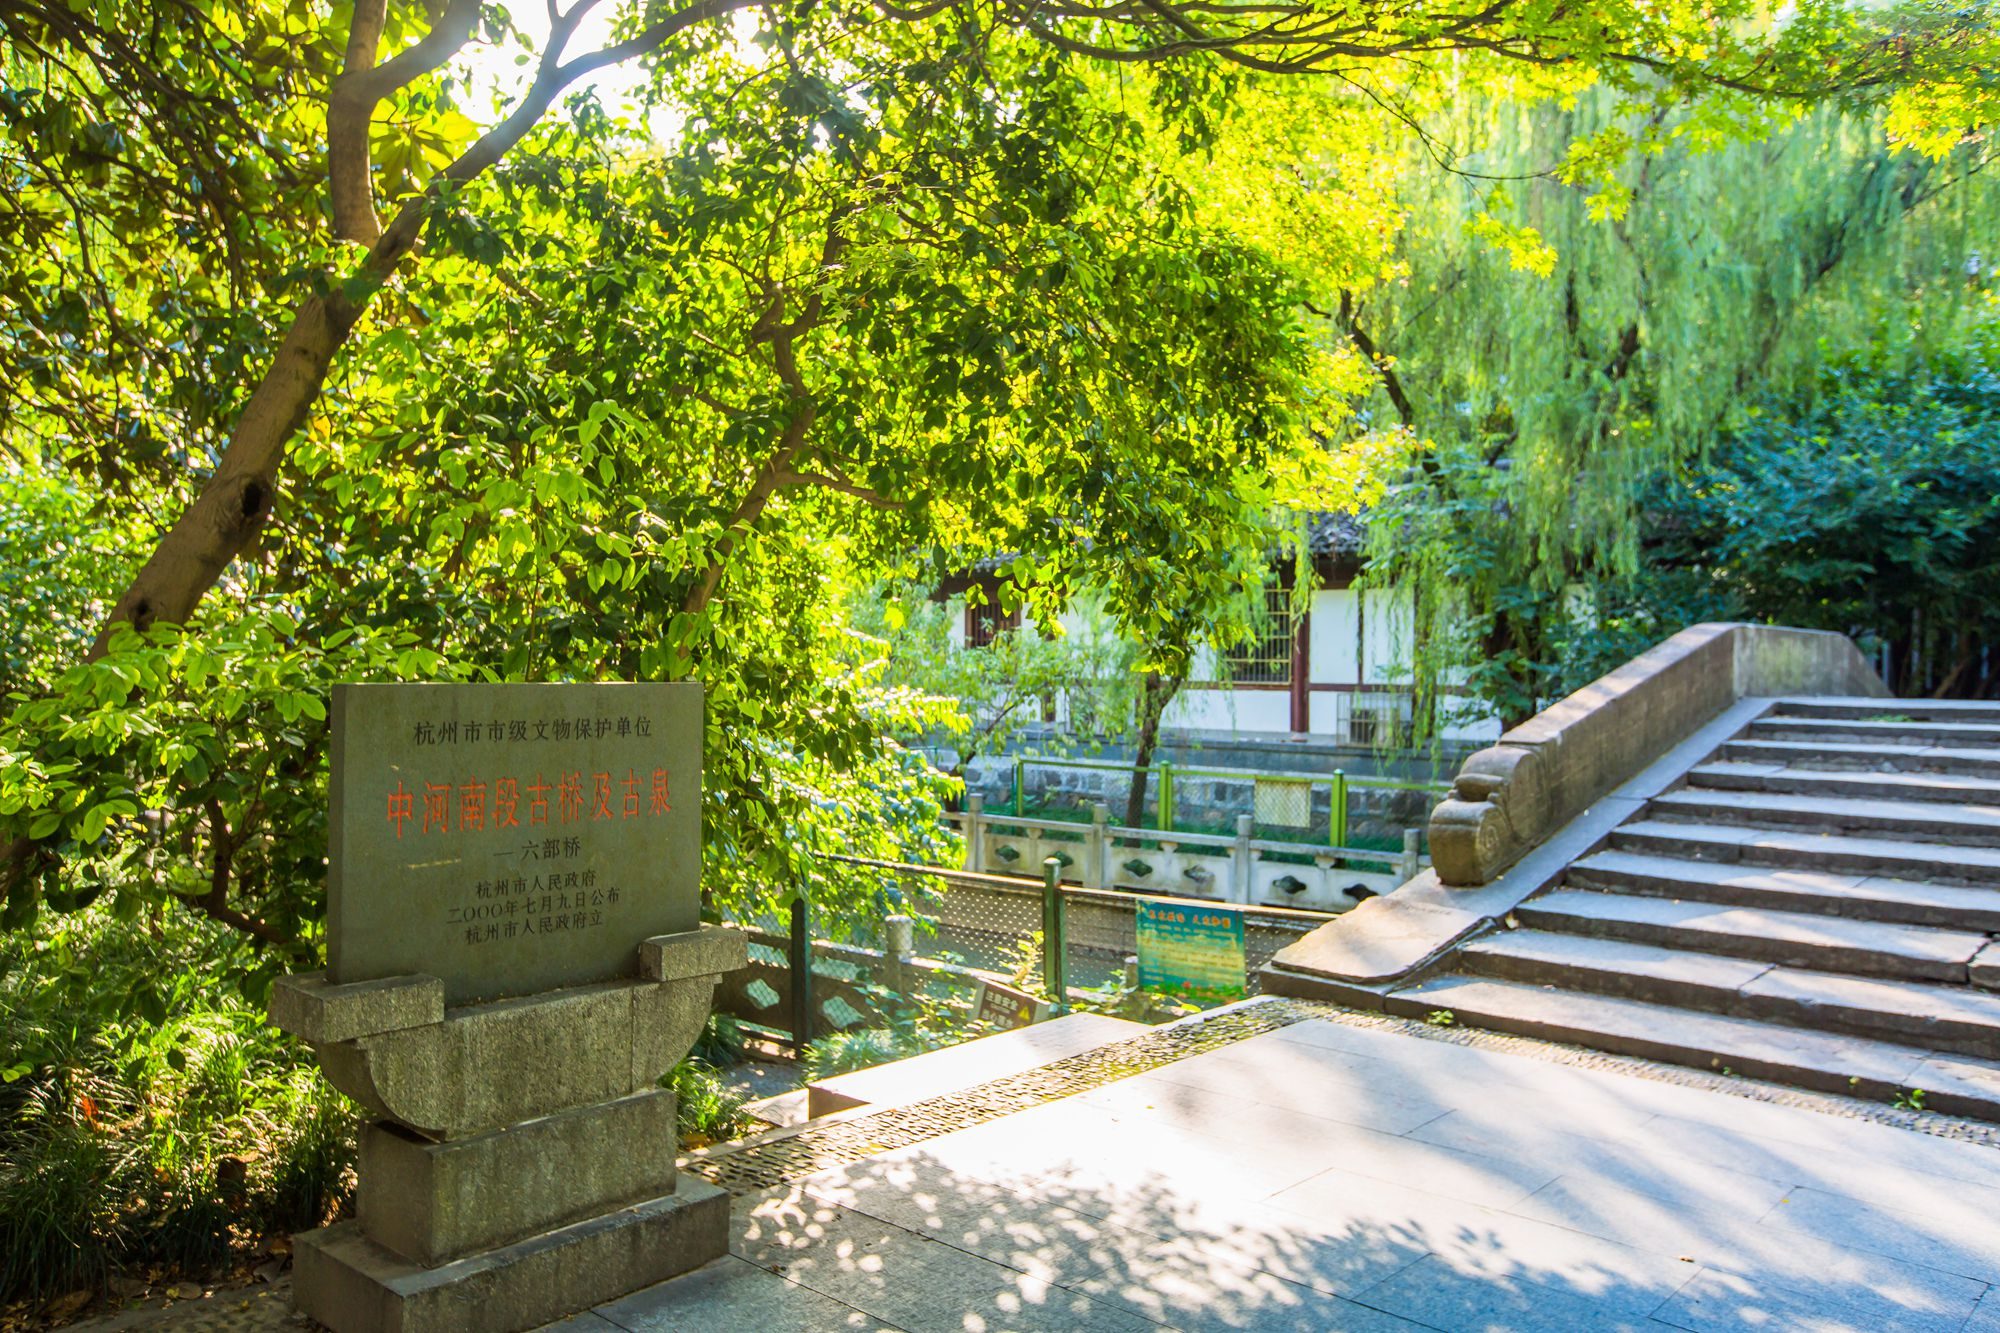 凤山水城门遗址,历史悠久,是杭州古代五水门中唯一尚存的一座